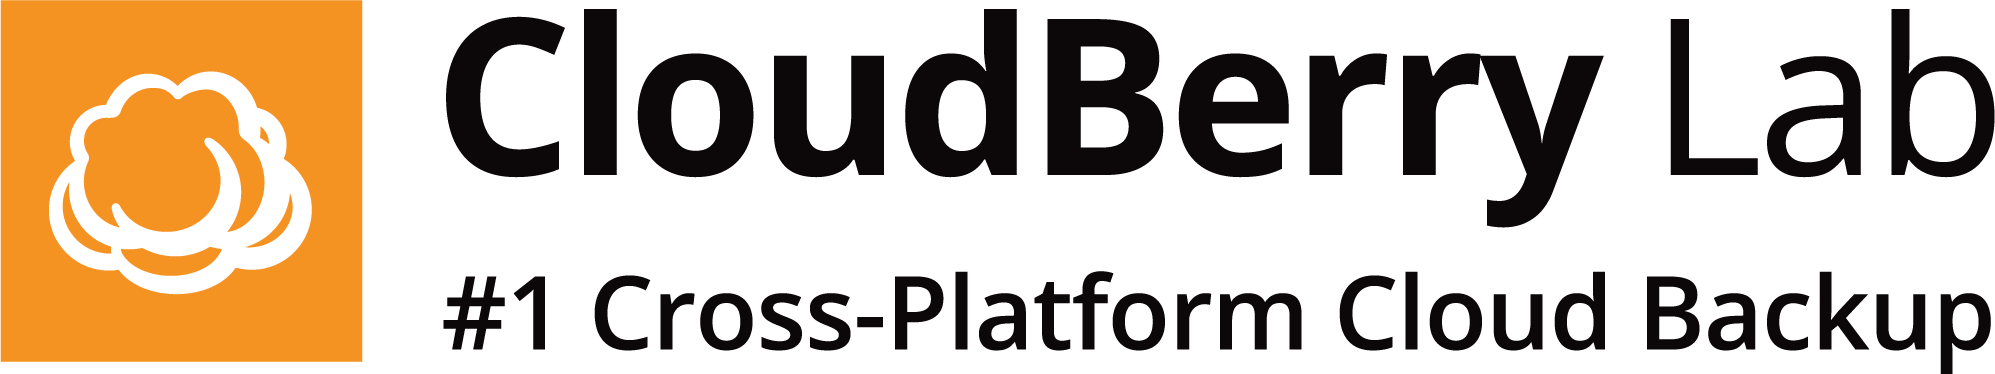 CloudBerry Lab-logotyp